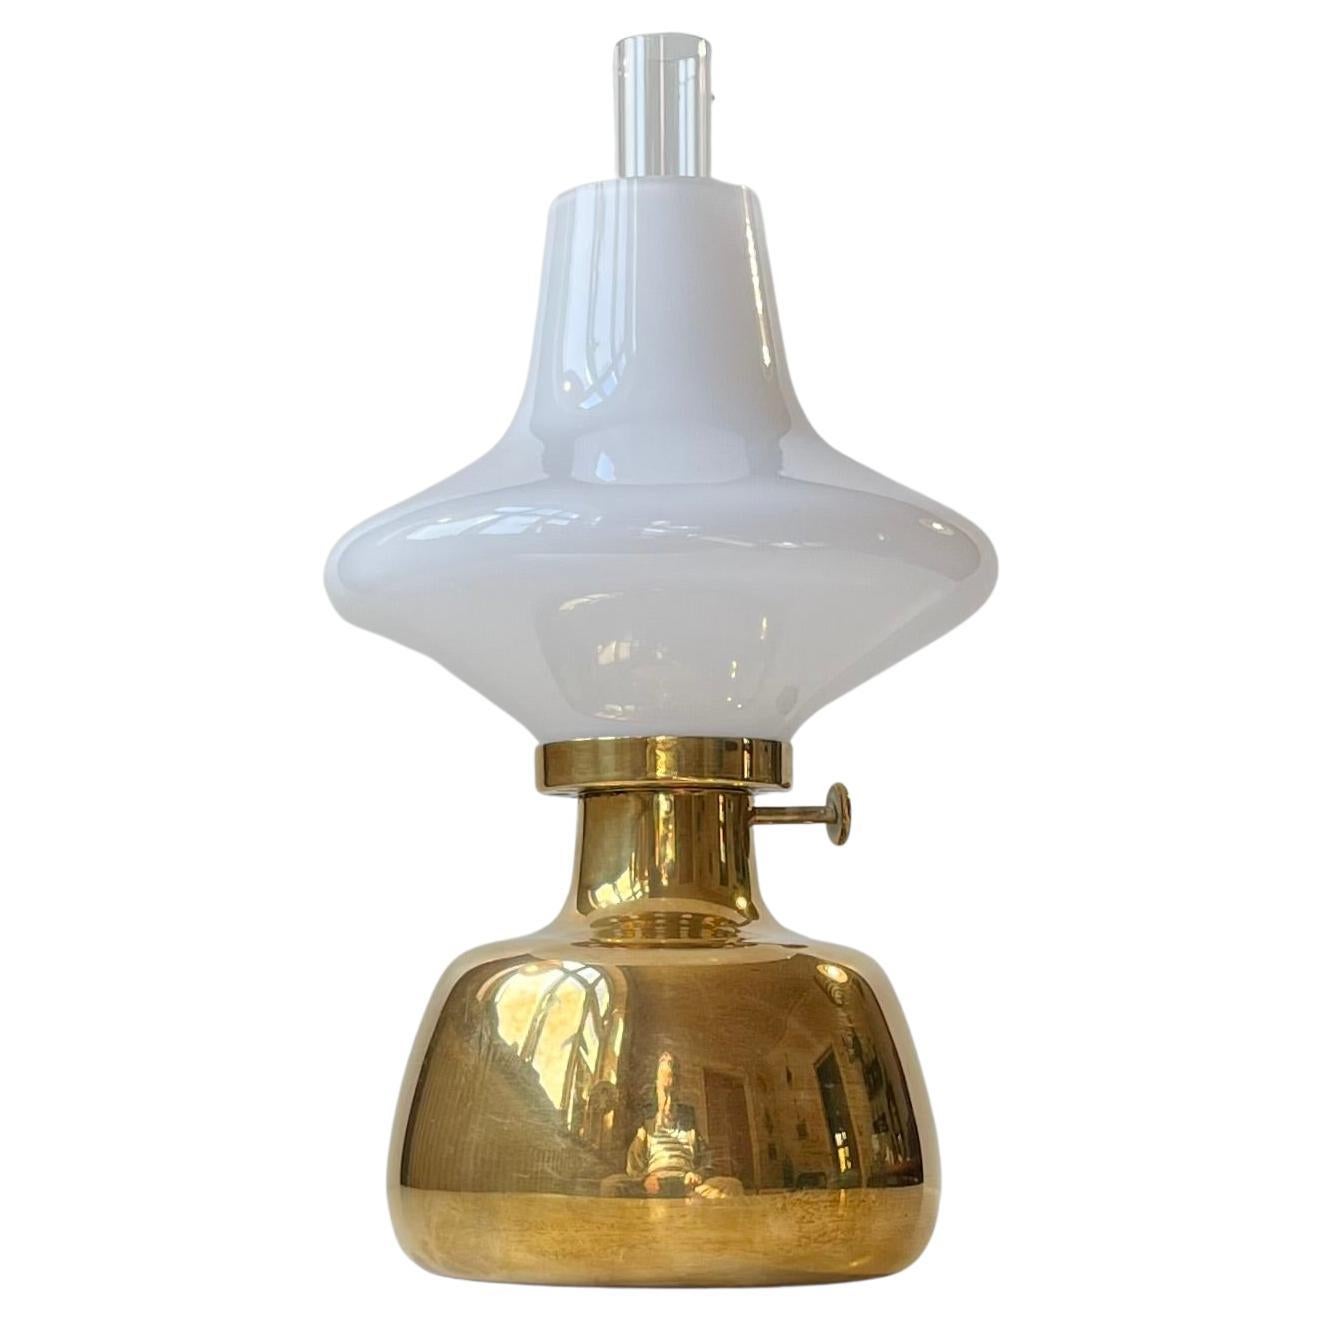 Henning Koppel lampe de bureau vintage Petronella à huile par Louis Poulsen